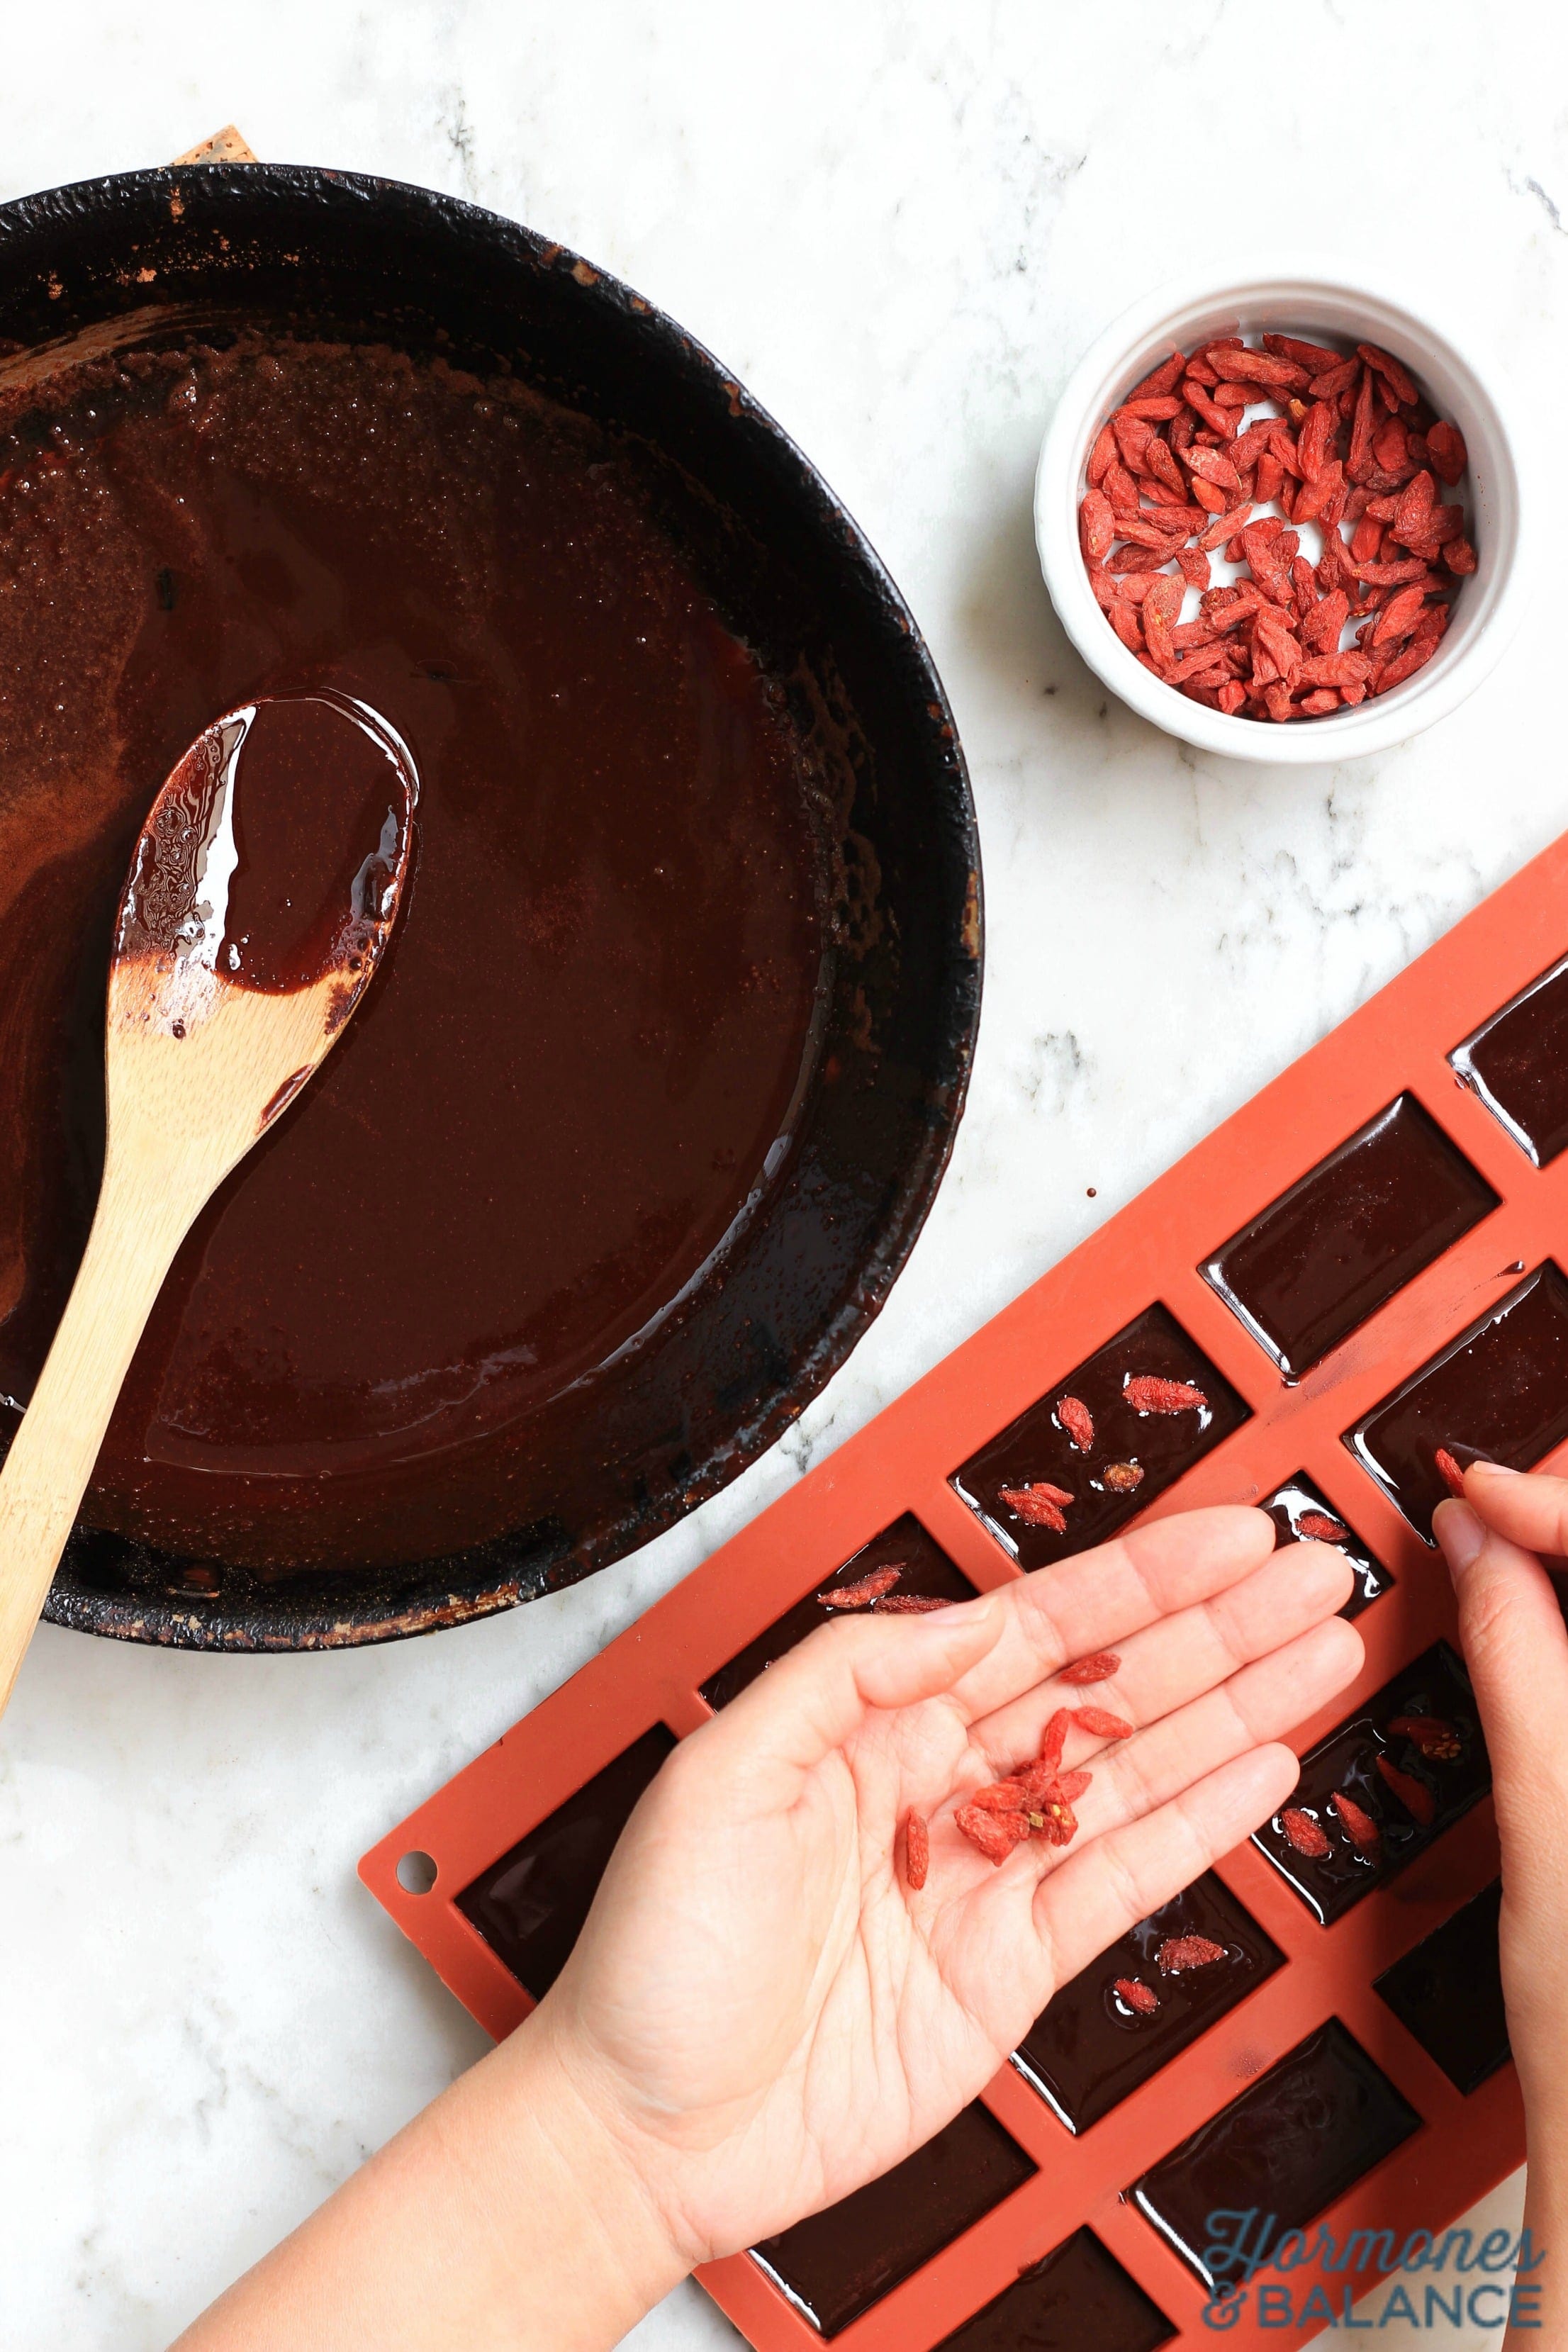 Homemade Chocolate with Goji Berries and Chili Powder Dessert Recipe